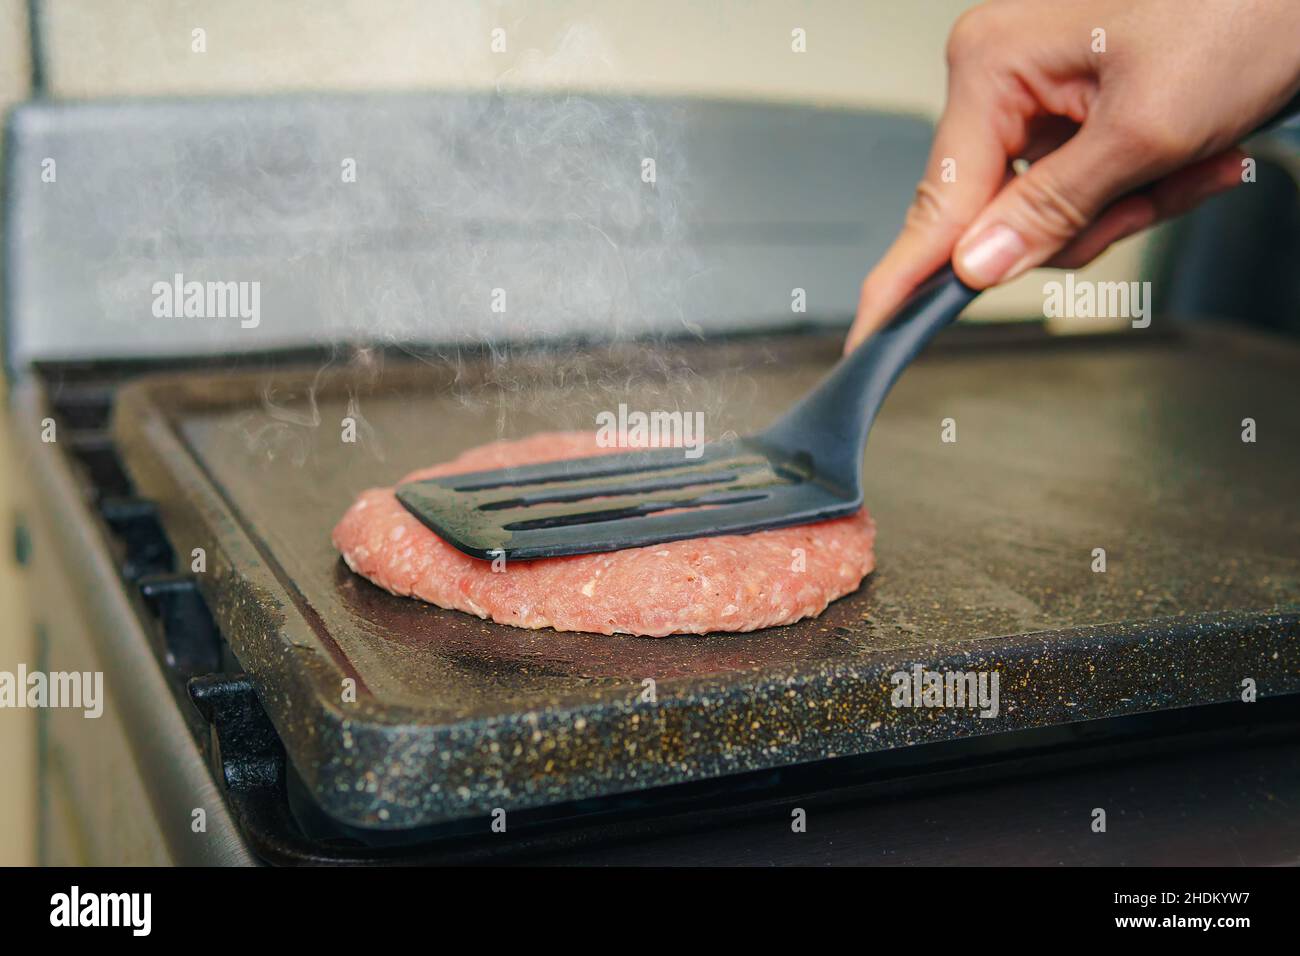 Hamburger Del Manzo Che Cucinano Sul Piatto Della Piastra Immagine Stock -  Immagine di carne, cotto: 33620591